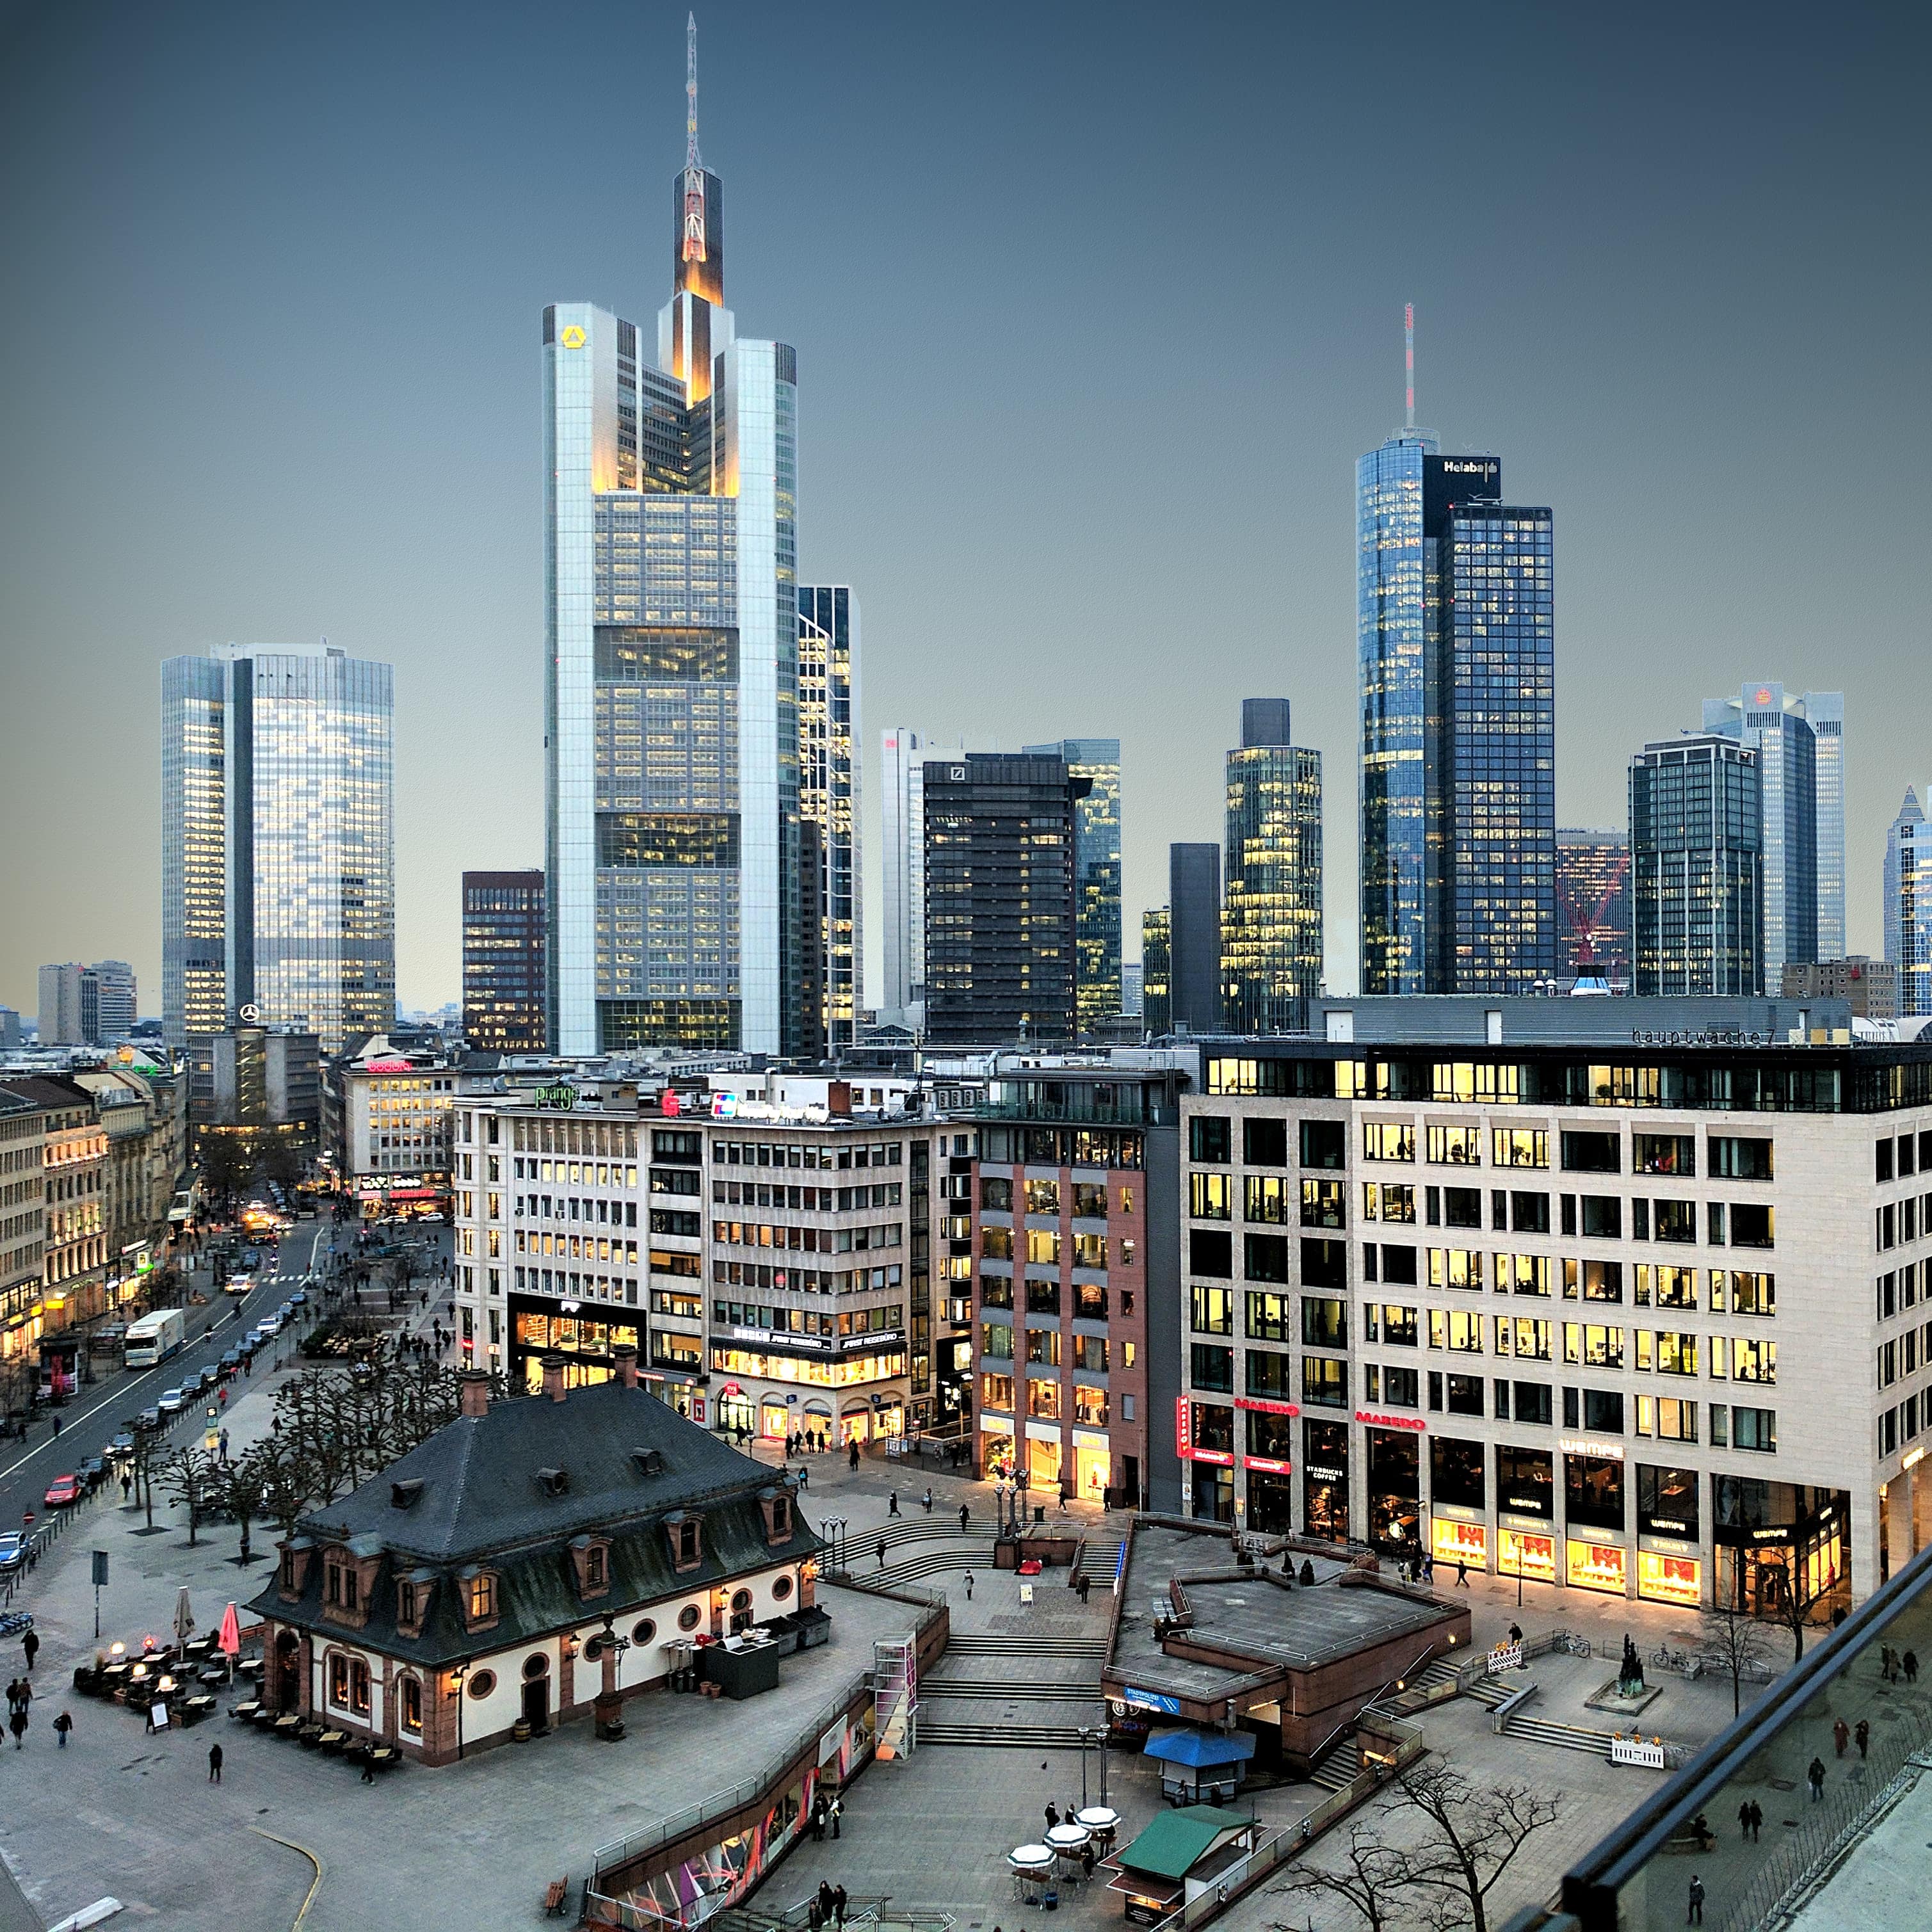 spektakulare skylines - Frankfurt Germany - Photo by Christian Salow